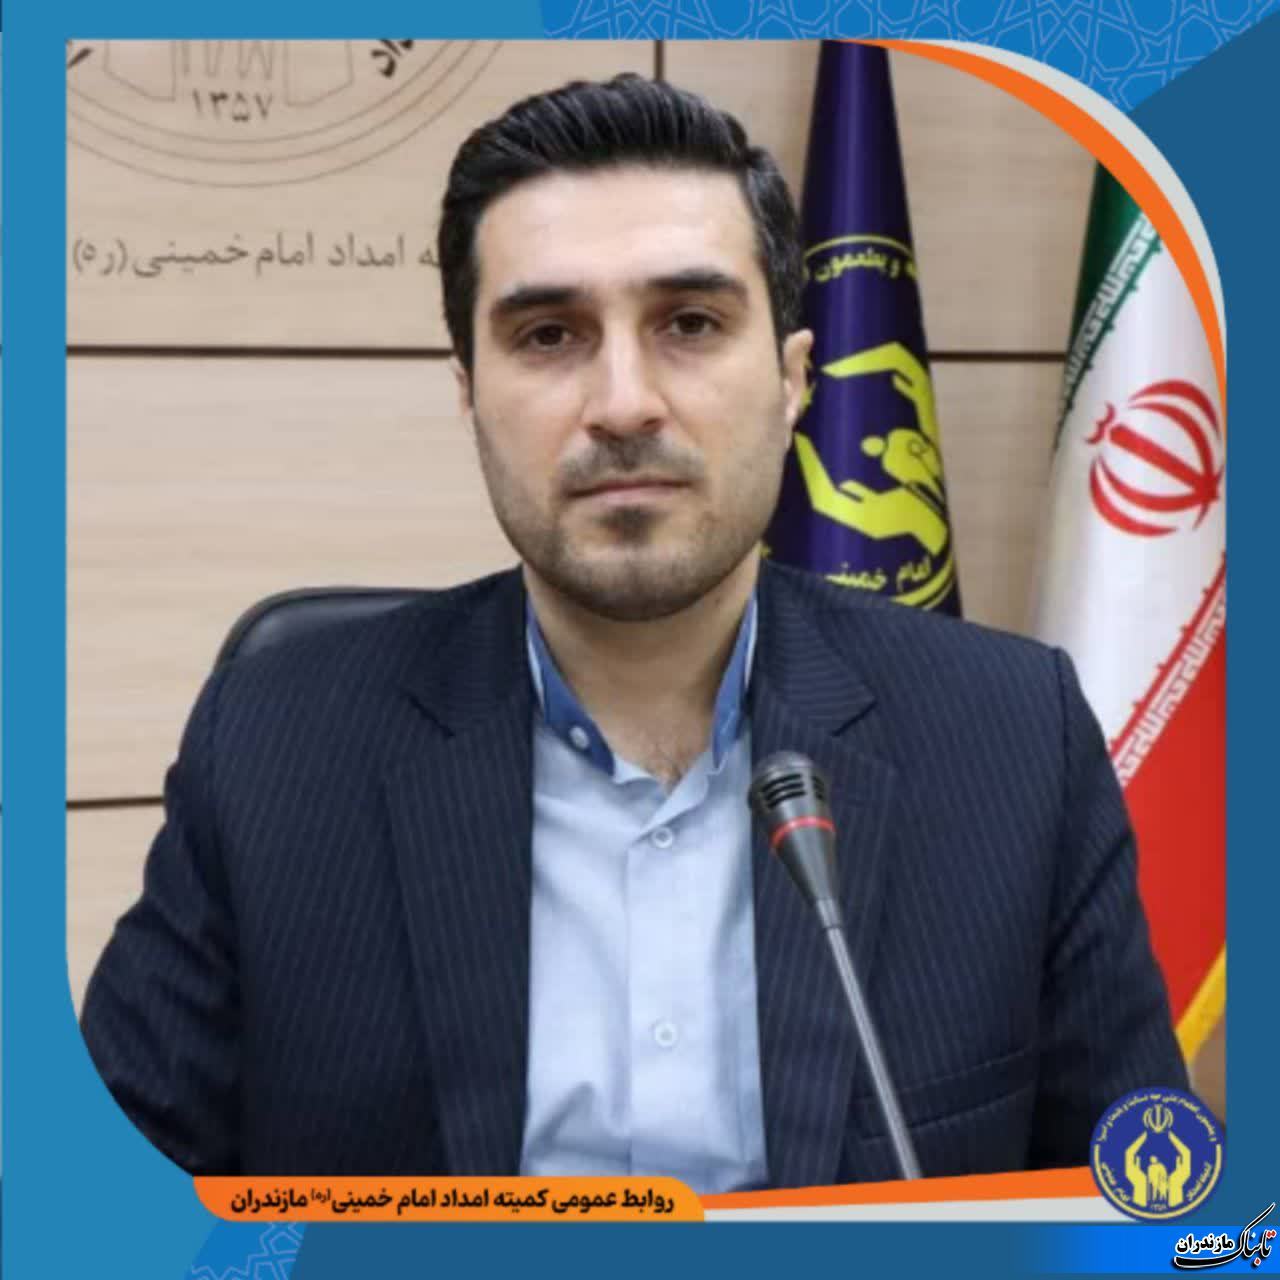 اهدای ۲۰۰ سبد کالای معیشتی در منطقه چهاردانگه توسط کمیته امداد